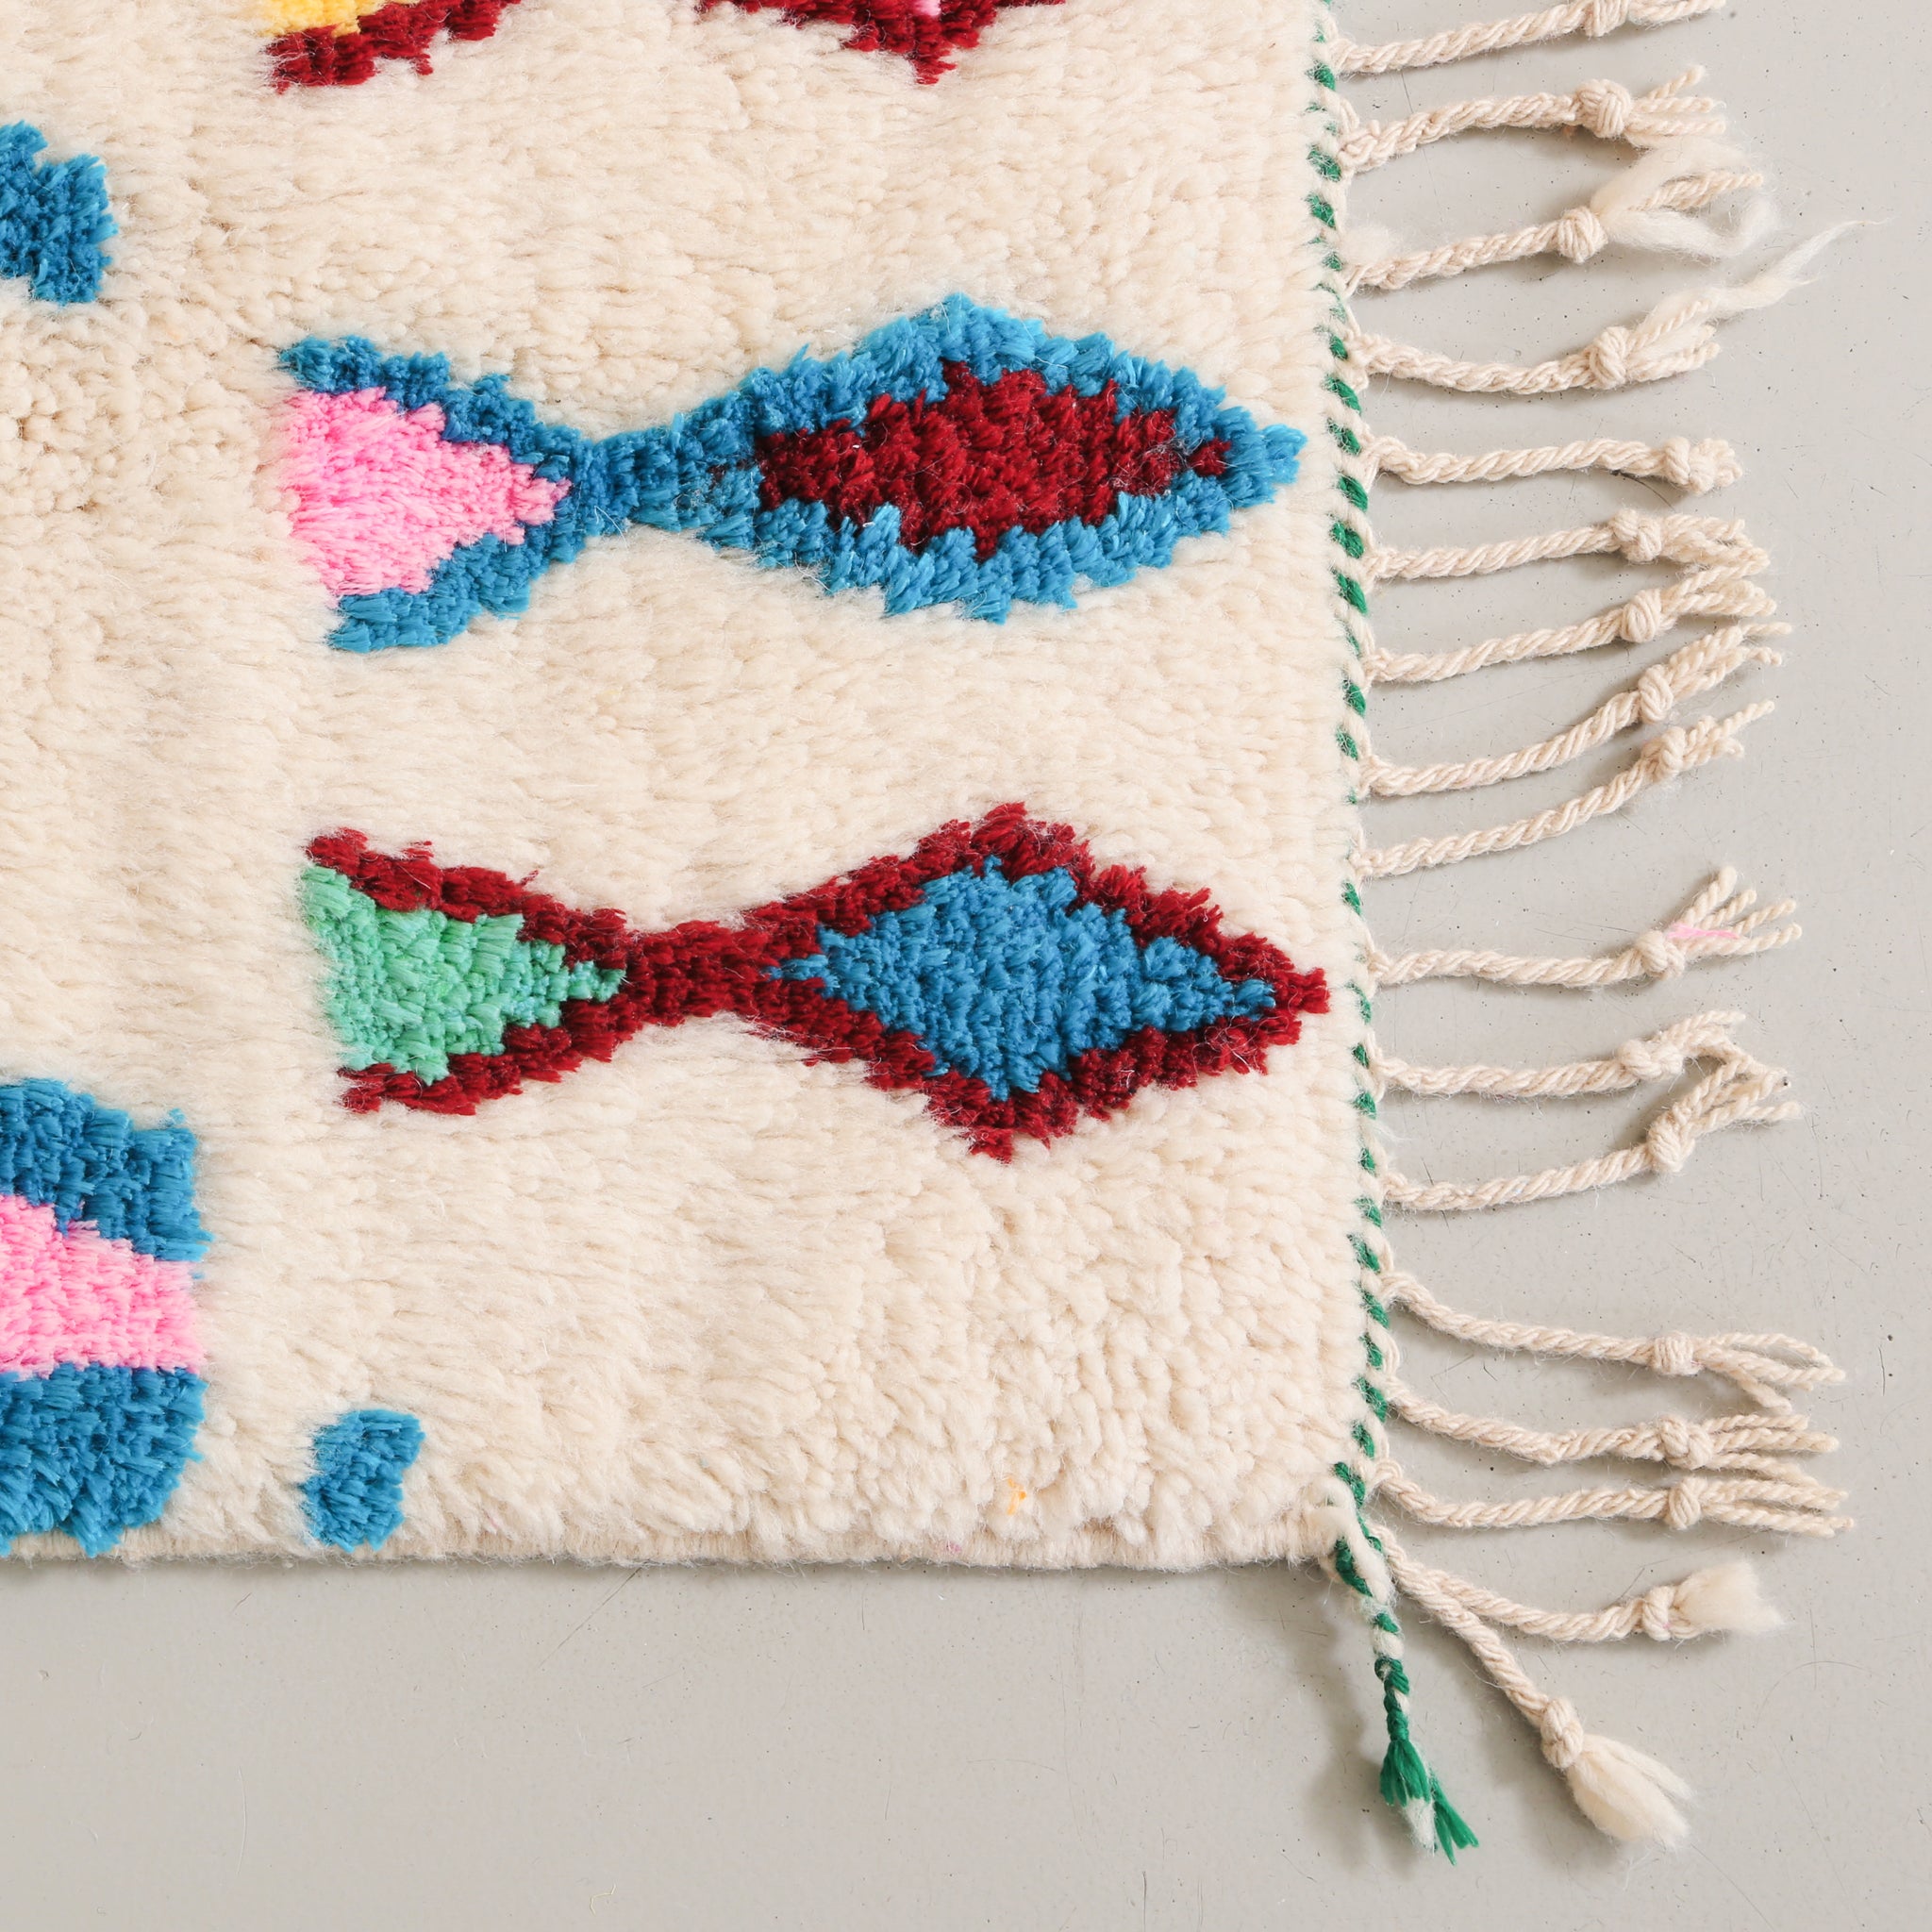 dettaglio dell'angolo di un tappeto in lana annodata con simboli che ricordano dei pesci di colore azzurro bordeaux e rosa. il tappetto è stato chiuso con una treccia bianca e verde. la frangia è sottile e lunga